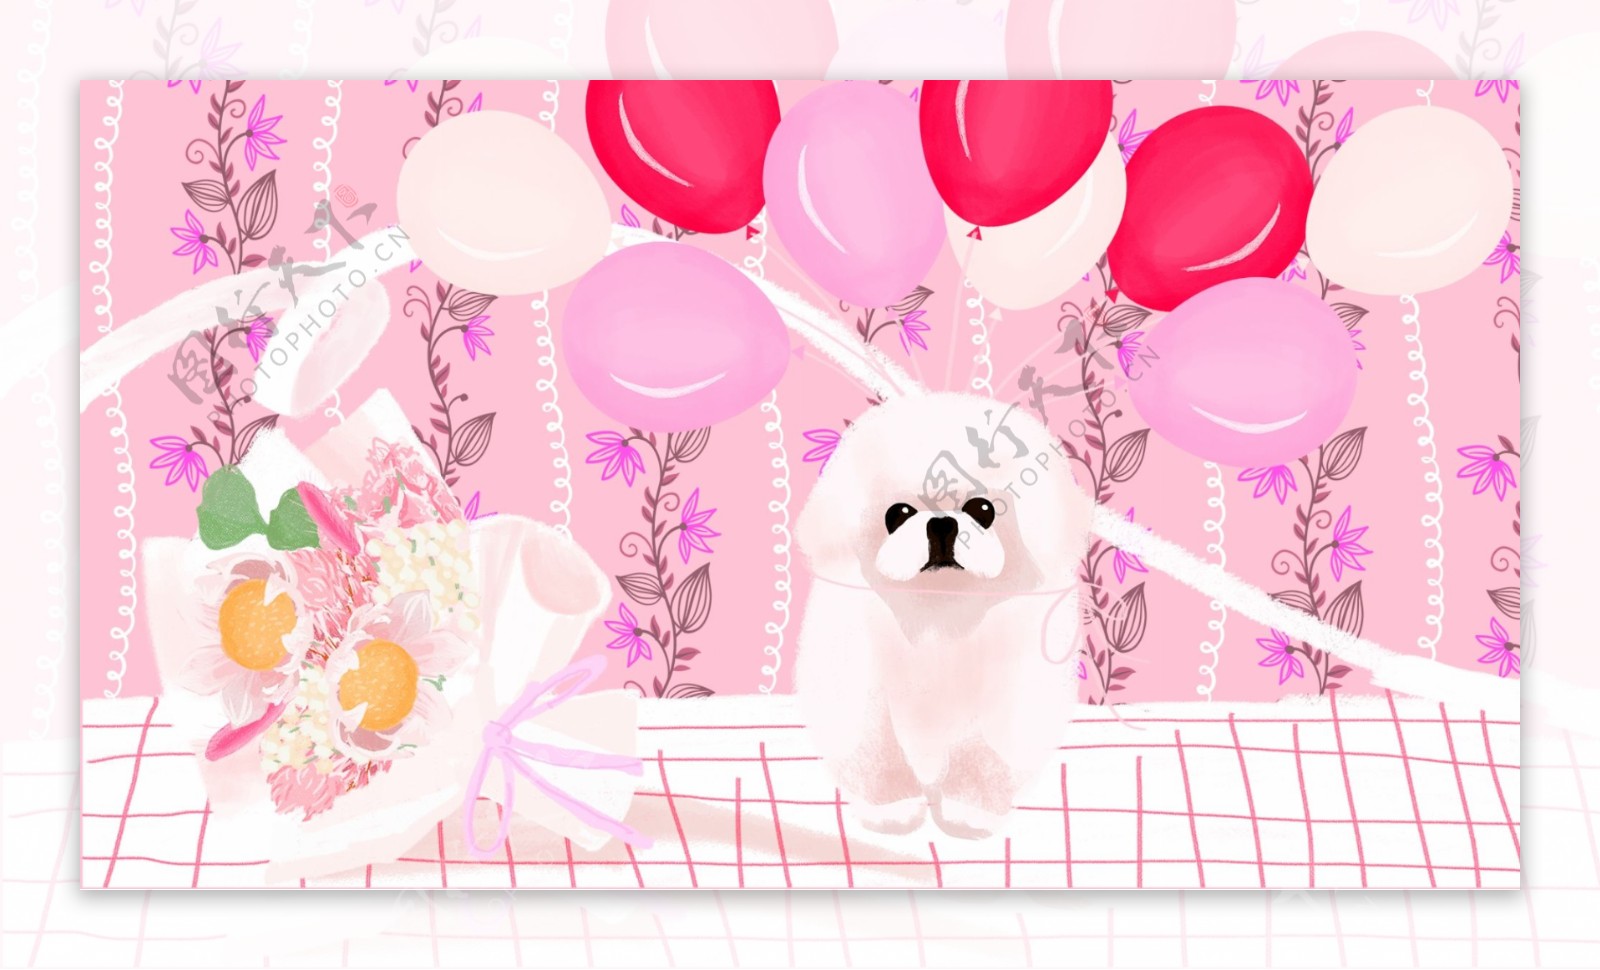 白色宠物狗花束粉色气球卡通背景